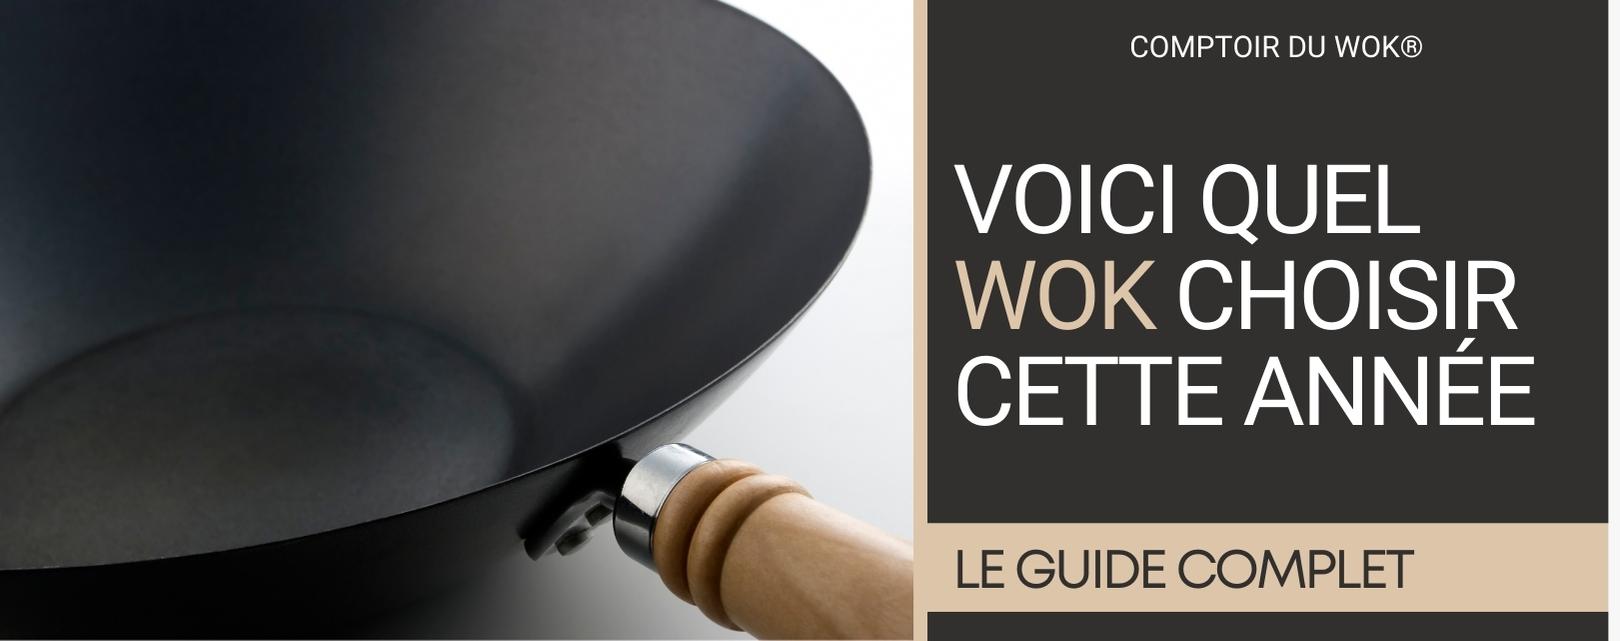 Wok électrique : notre avis sur les meilleurs woks 2020 